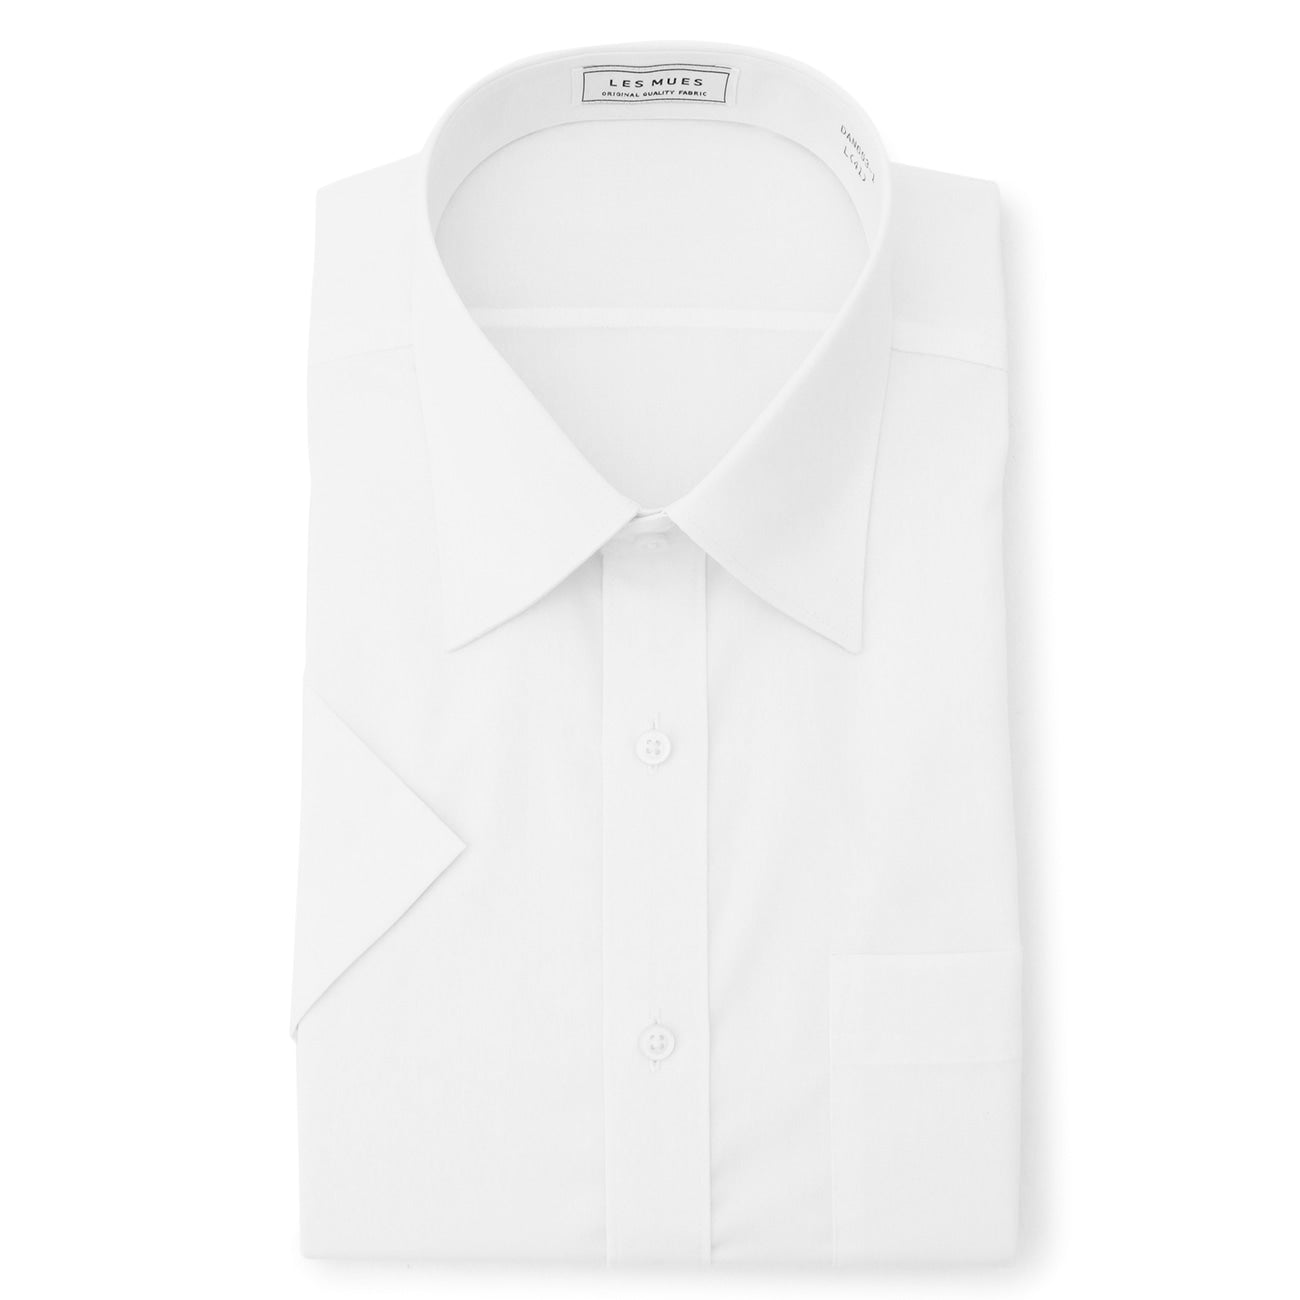 Aircool 免烫标准领短袖衬衫